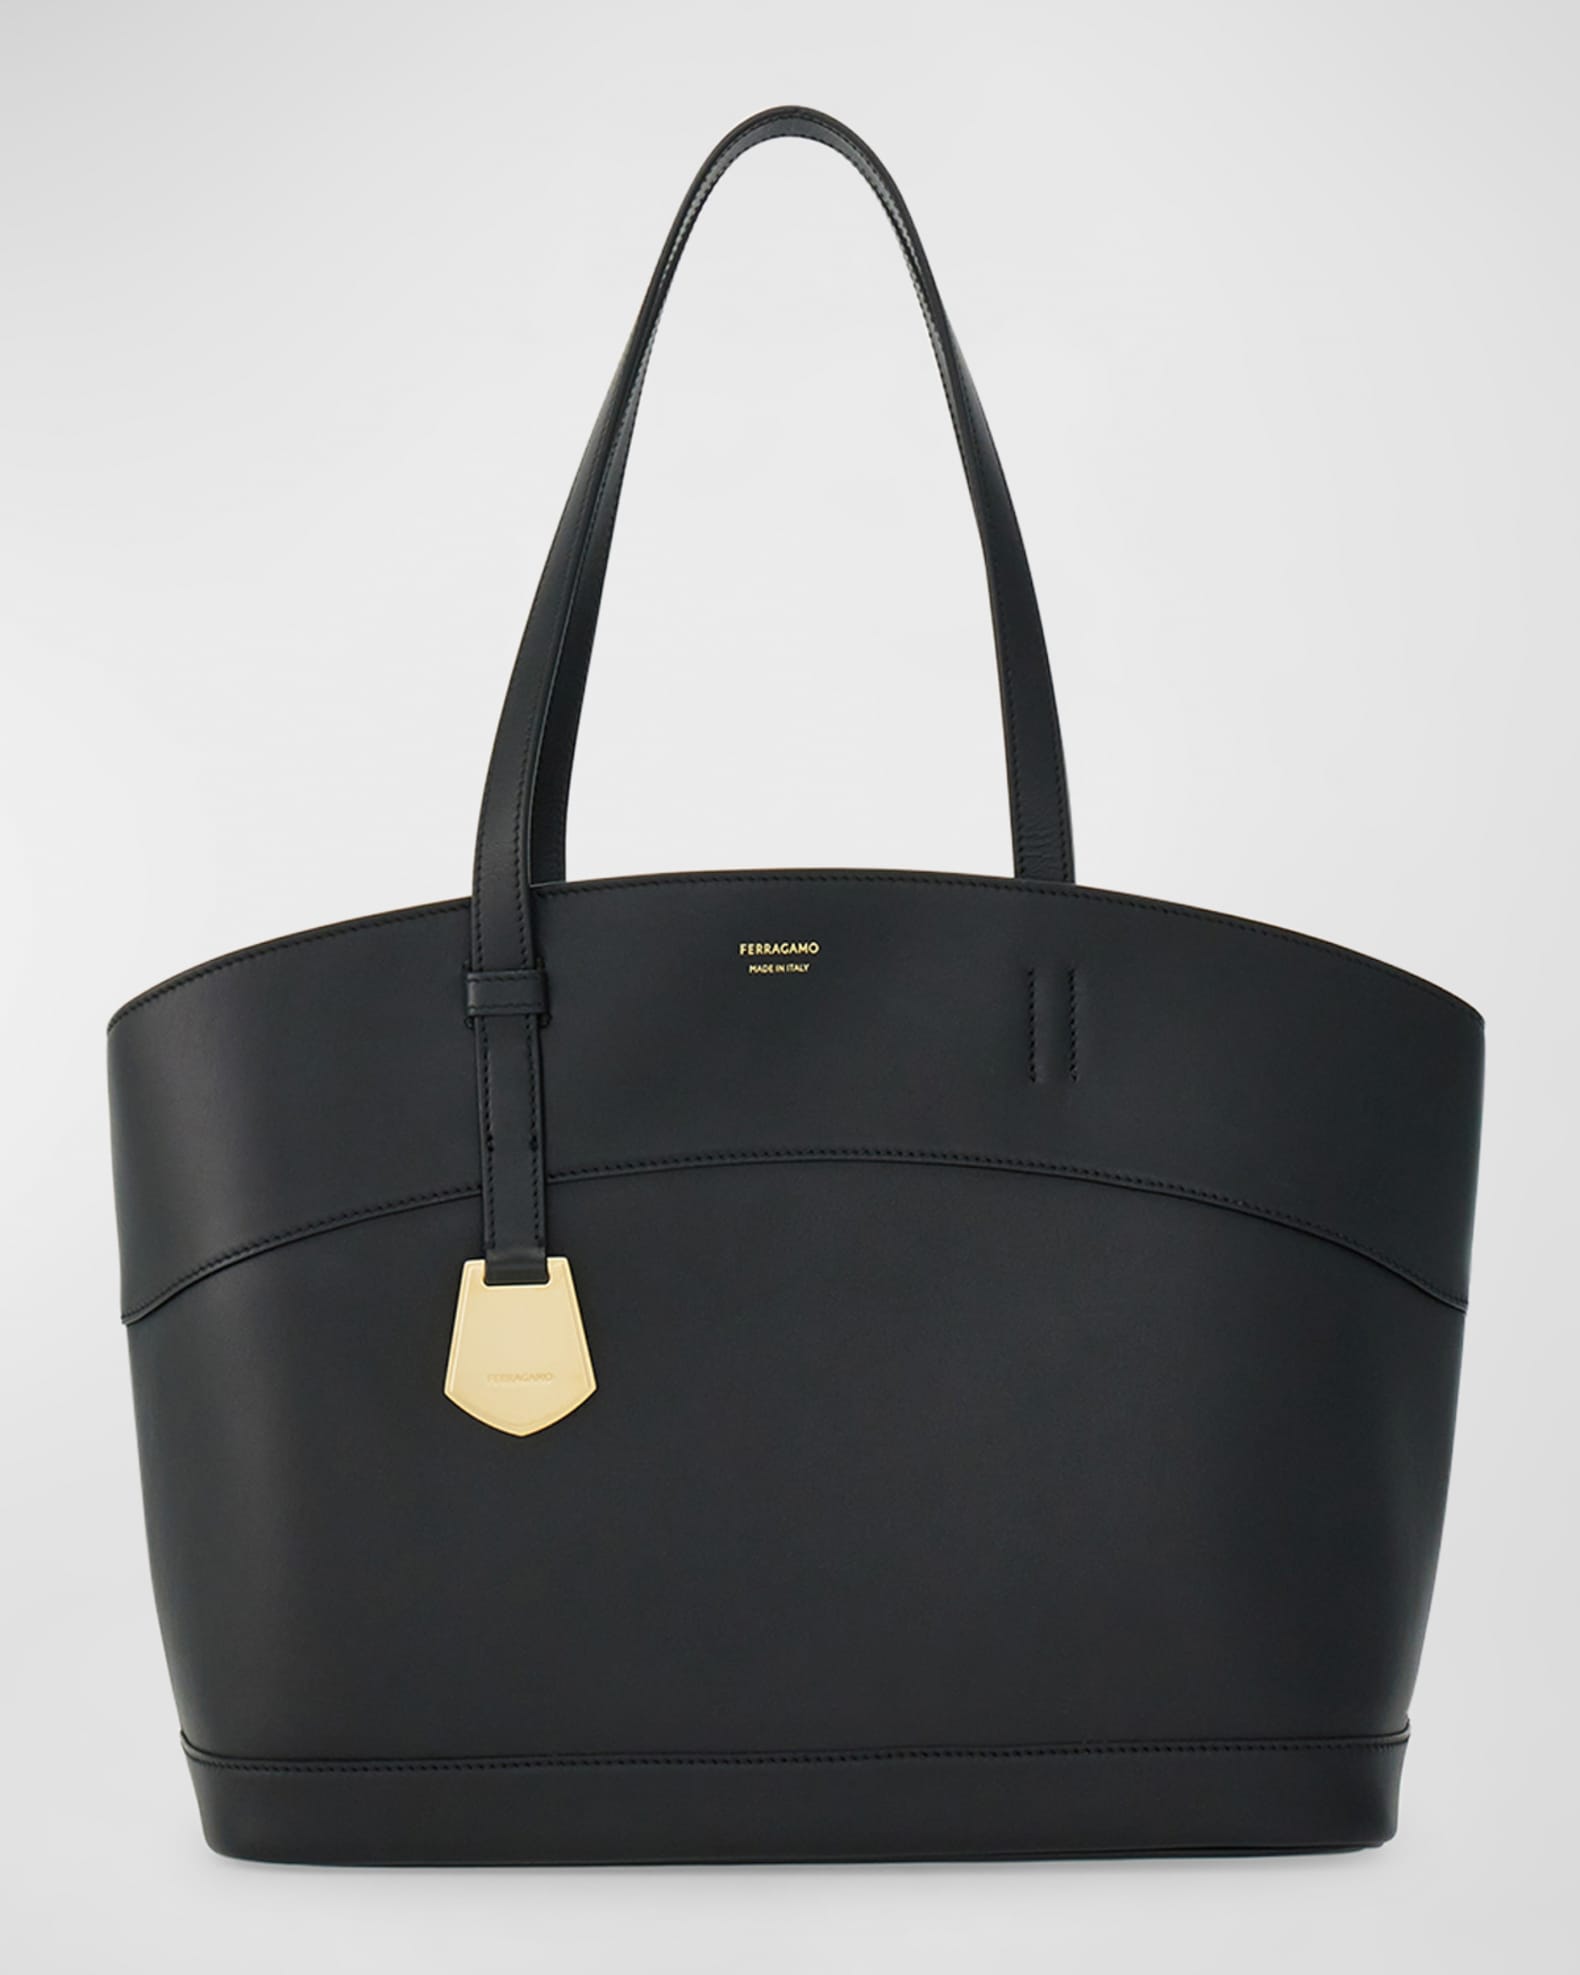 Ferragamo Charming Small Leather Tote Bag | Neiman Marcus